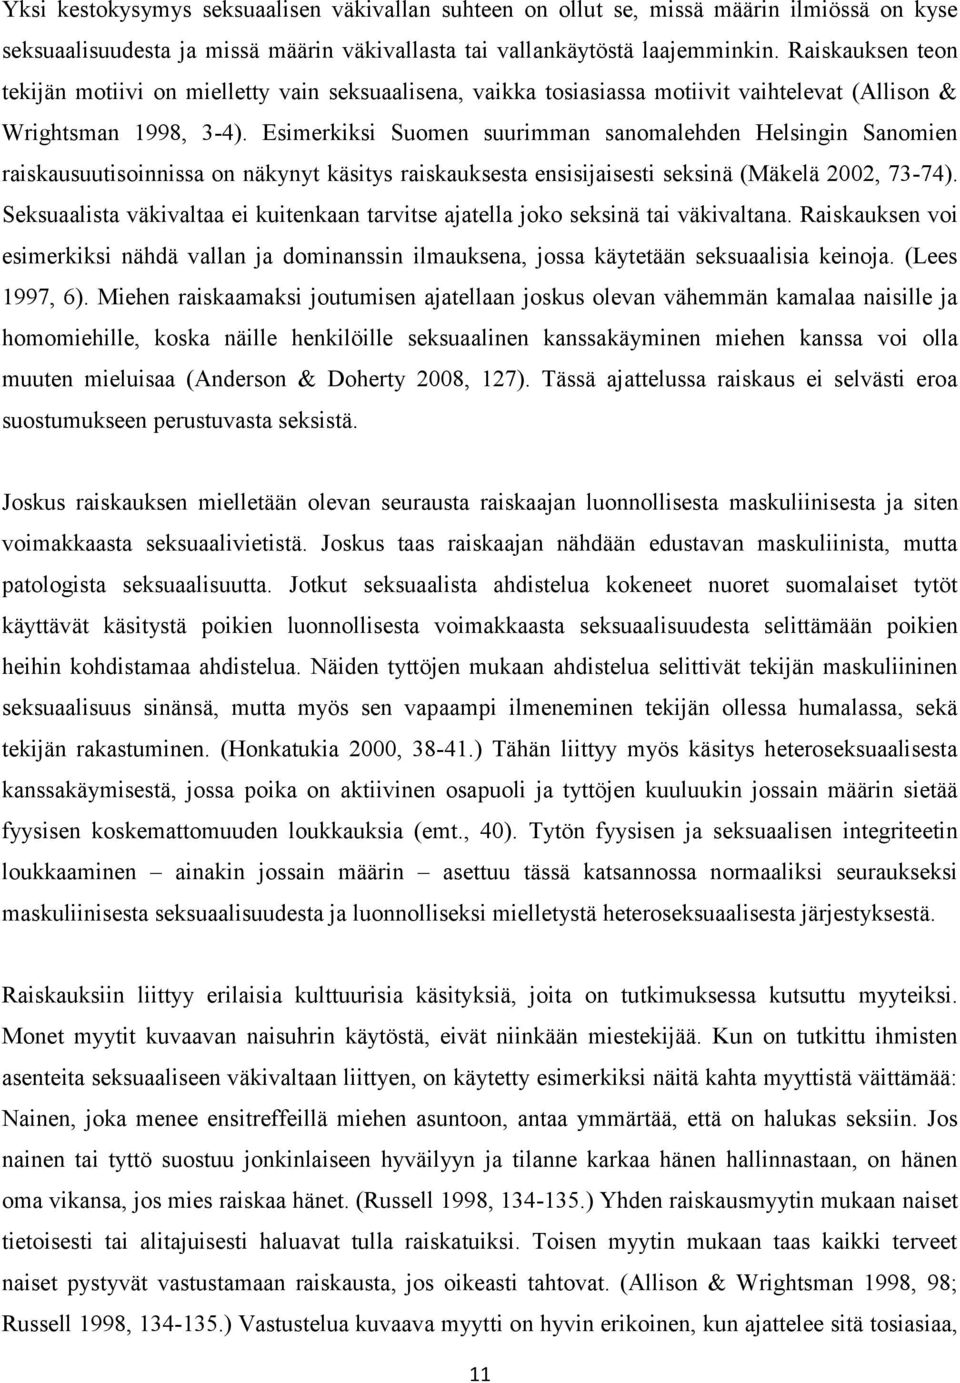 Esimerkiksi Suomen suurimman sanomalehden Helsingin Sanomien raiskausuutisoinnissa on näkynyt käsitys raiskauksesta ensisijaisesti seksinä (Mäkelä 2002, 73-74).